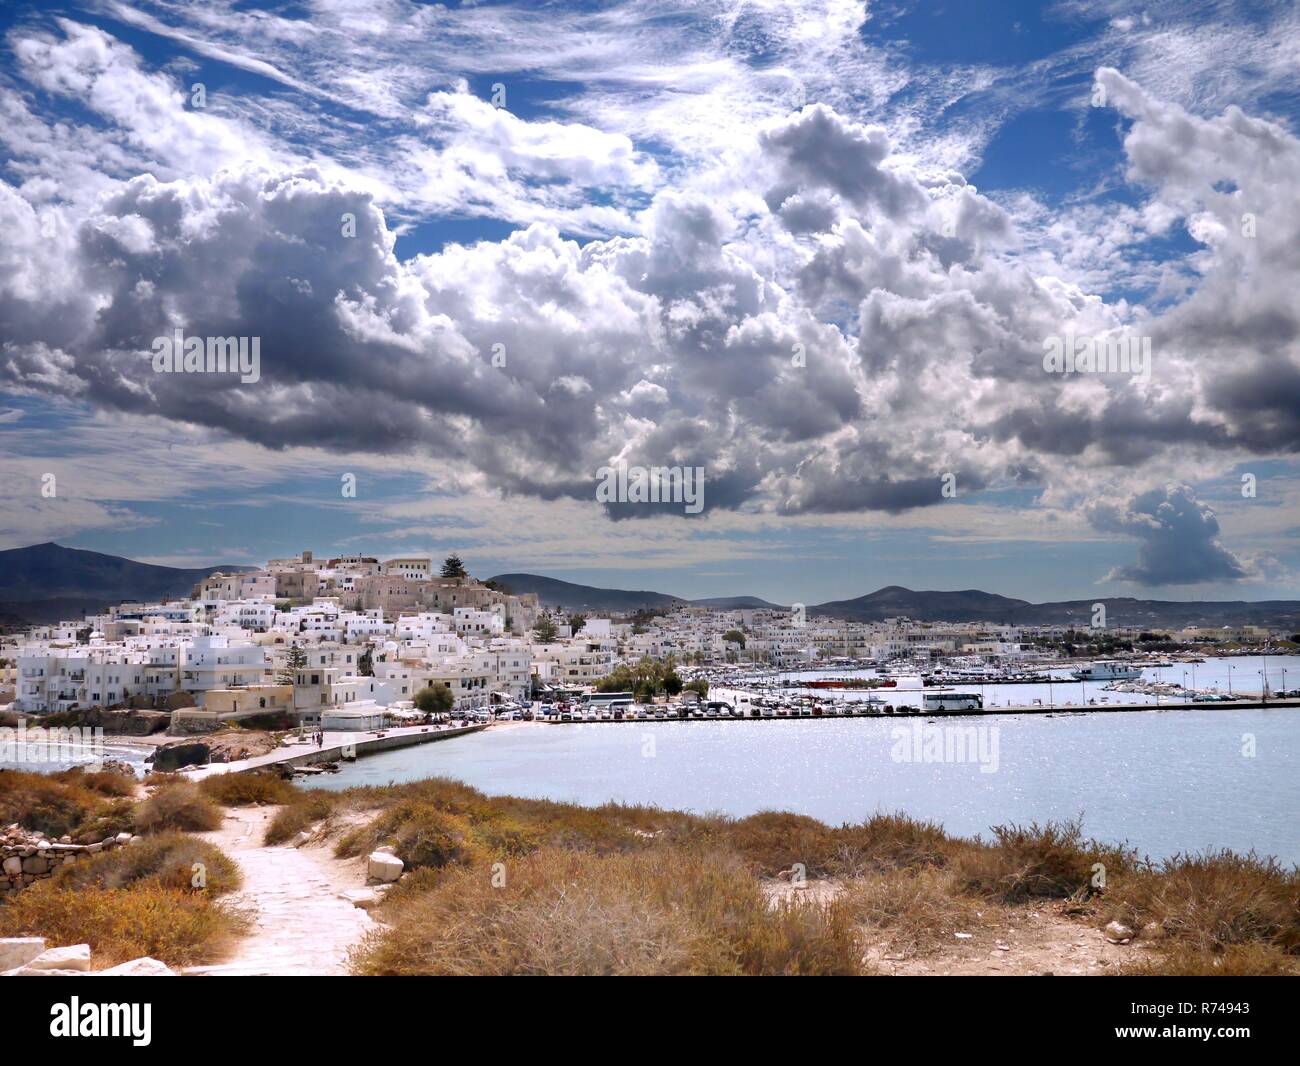 Vue de l'ancienne ville de Chora, Naxos Island, Grèce. Naxos est la plus grande des Cyclades. Banque D'Images